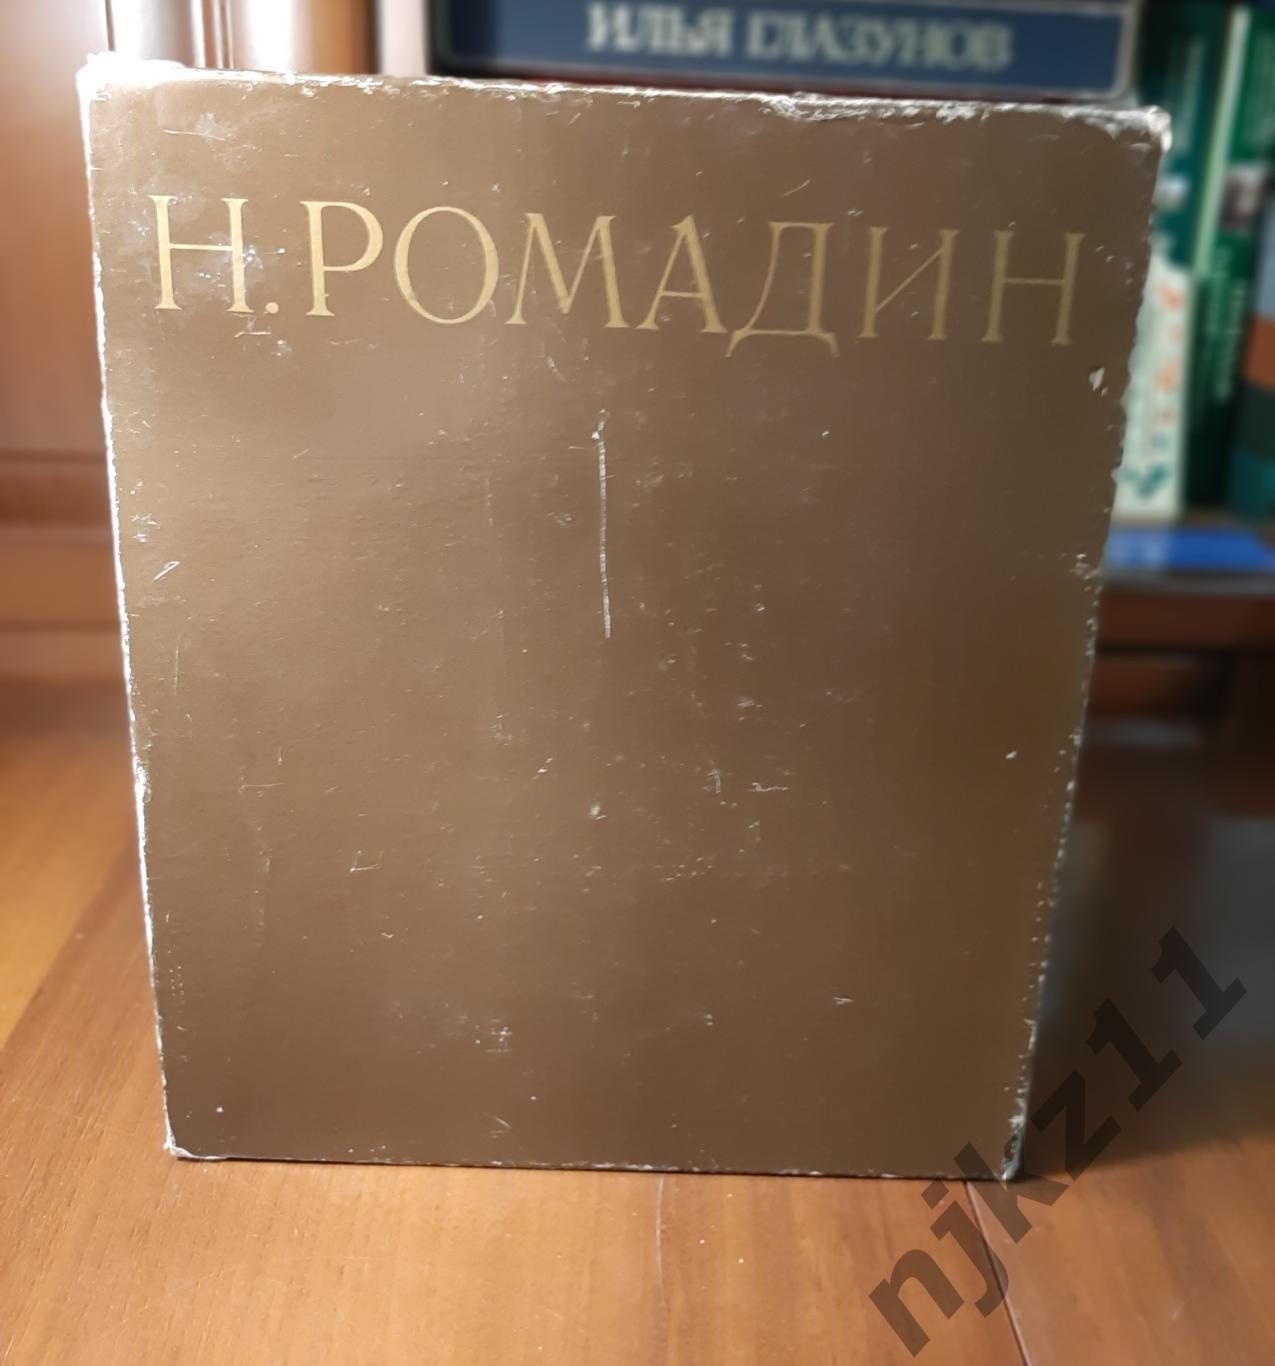 Ромадина, Н.Г. Николай Ромадин 1981г. Альбом 2